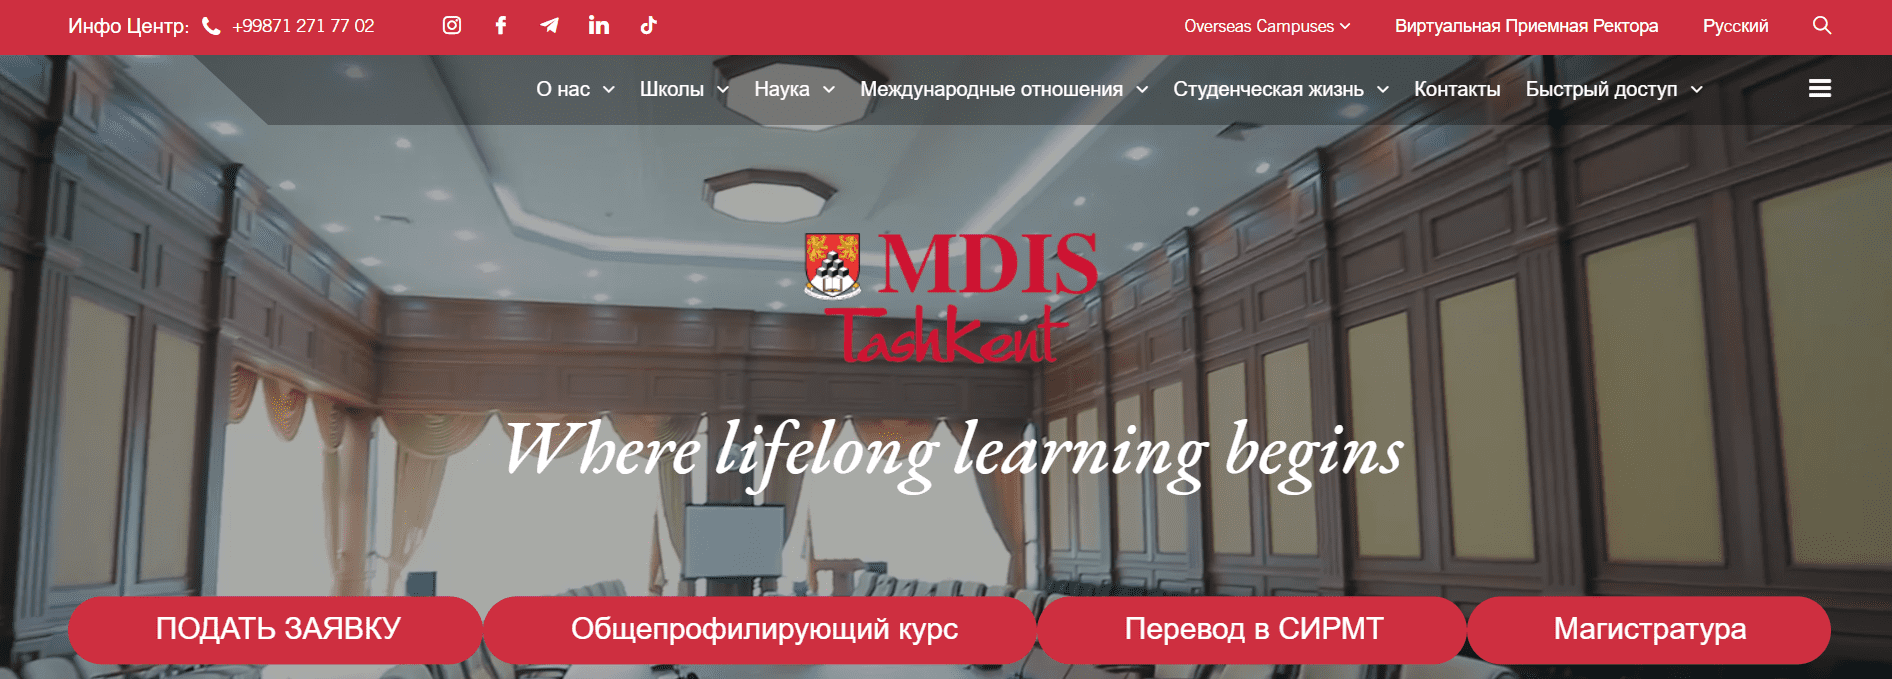 СИРМ в Ташкенте (mdis.uz) - официальный сайт